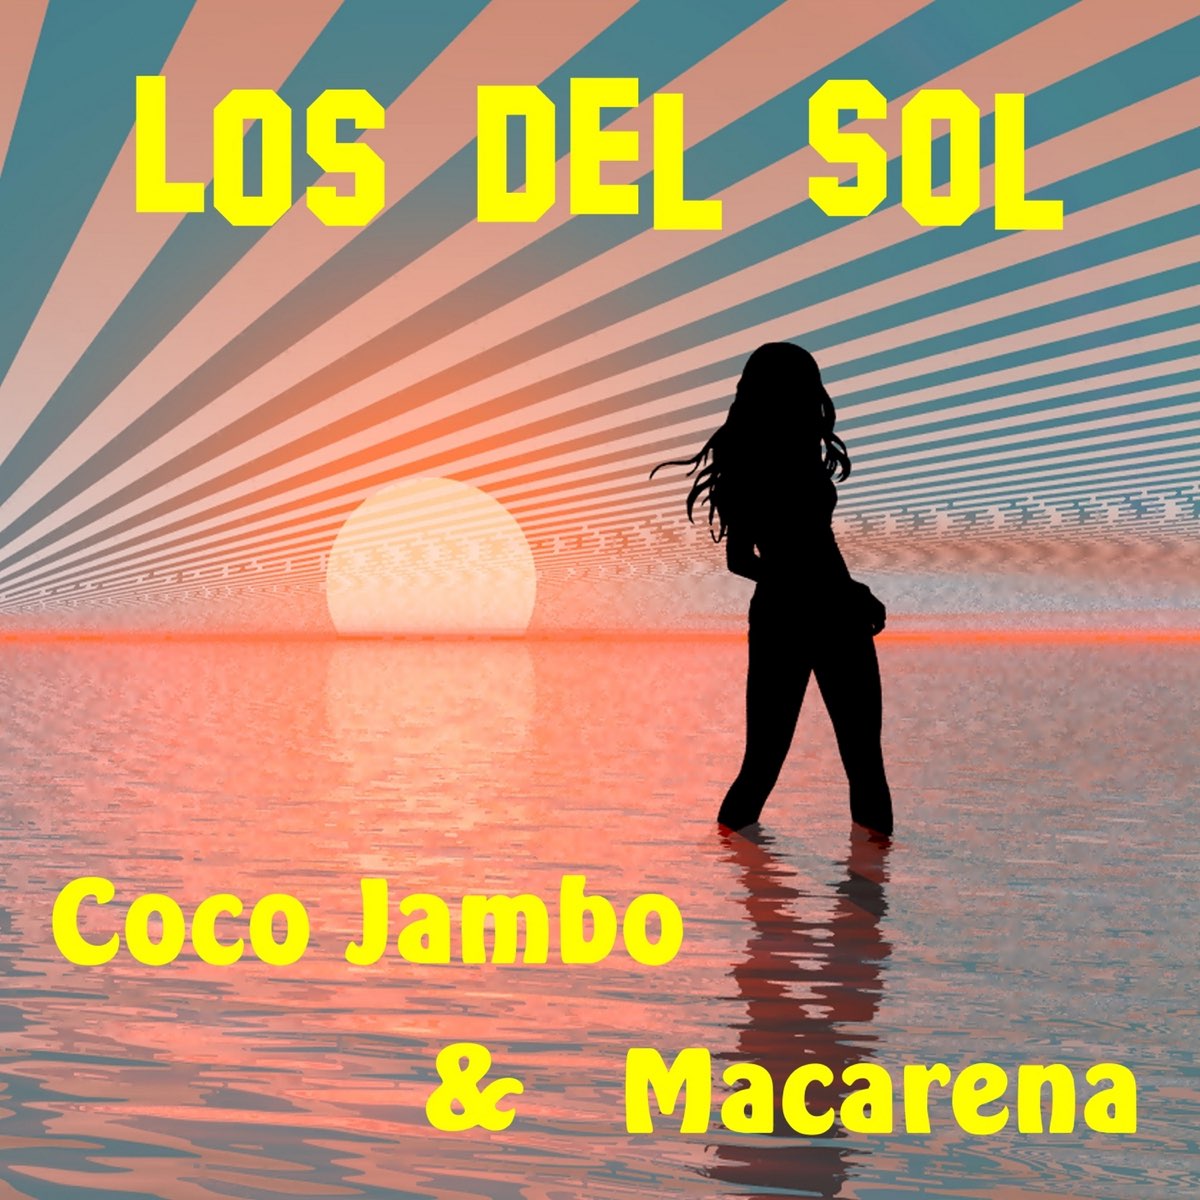 Coco jambo remix. Коко джамбо. Сосо джамбо. Песня Coco Jambo. Песня кооджамбо.